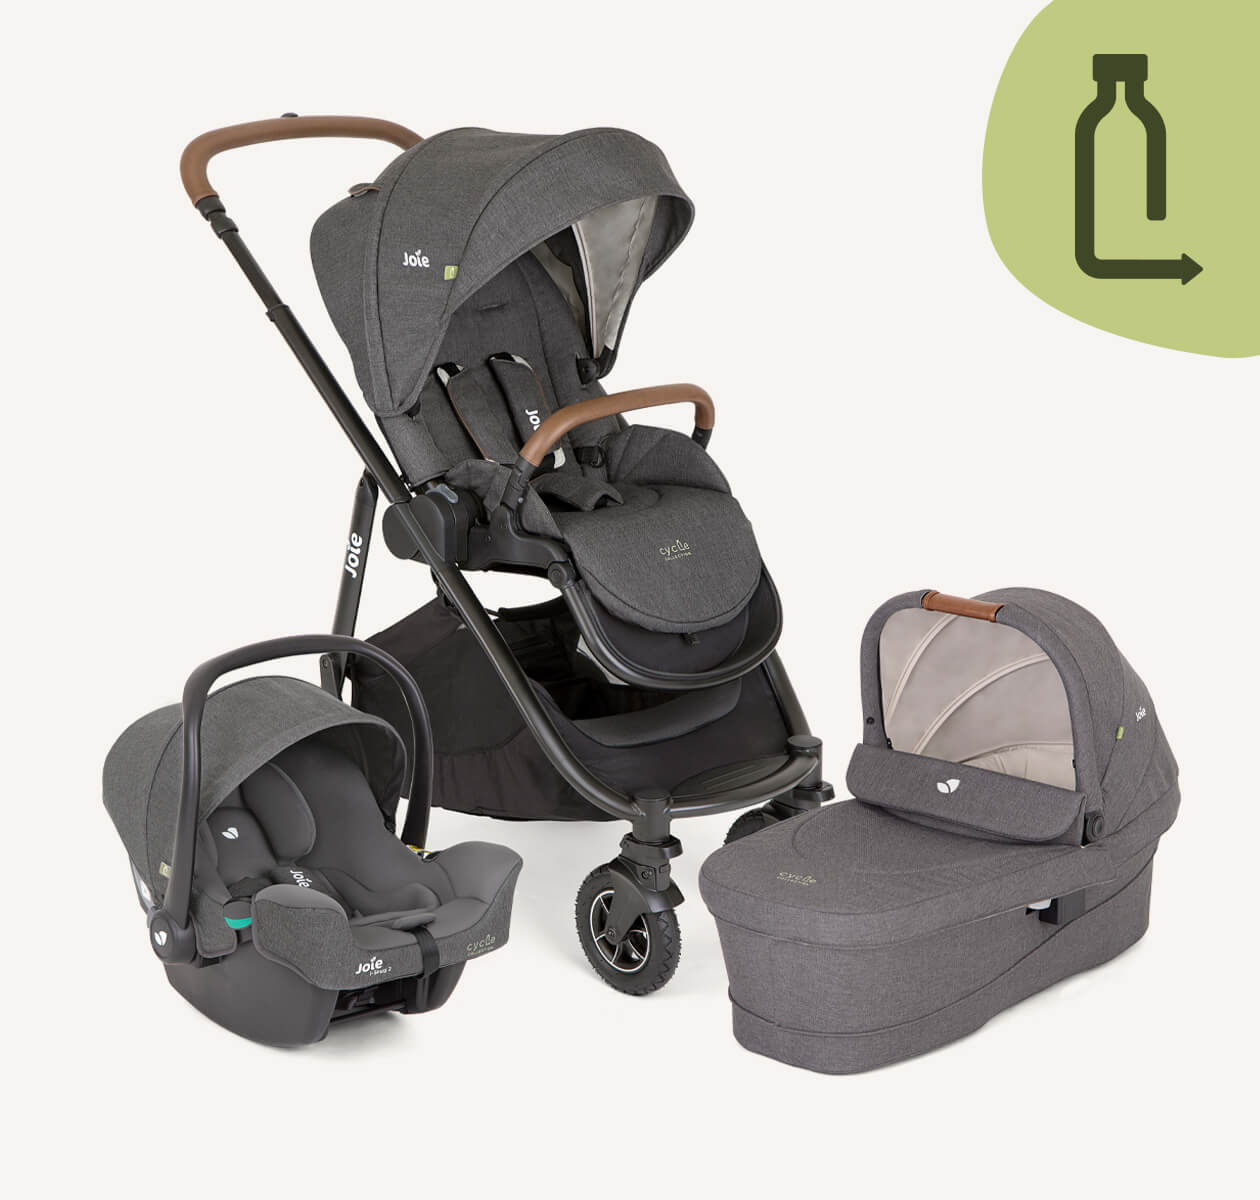 Alle 3 Produkte des Versatrax-Trios sind zusammen in Dunkelgrau abgebildet: Versatrax-Kinderwagen, Babyschale I-Snug 2 und Babytragetasche Ramble XL.